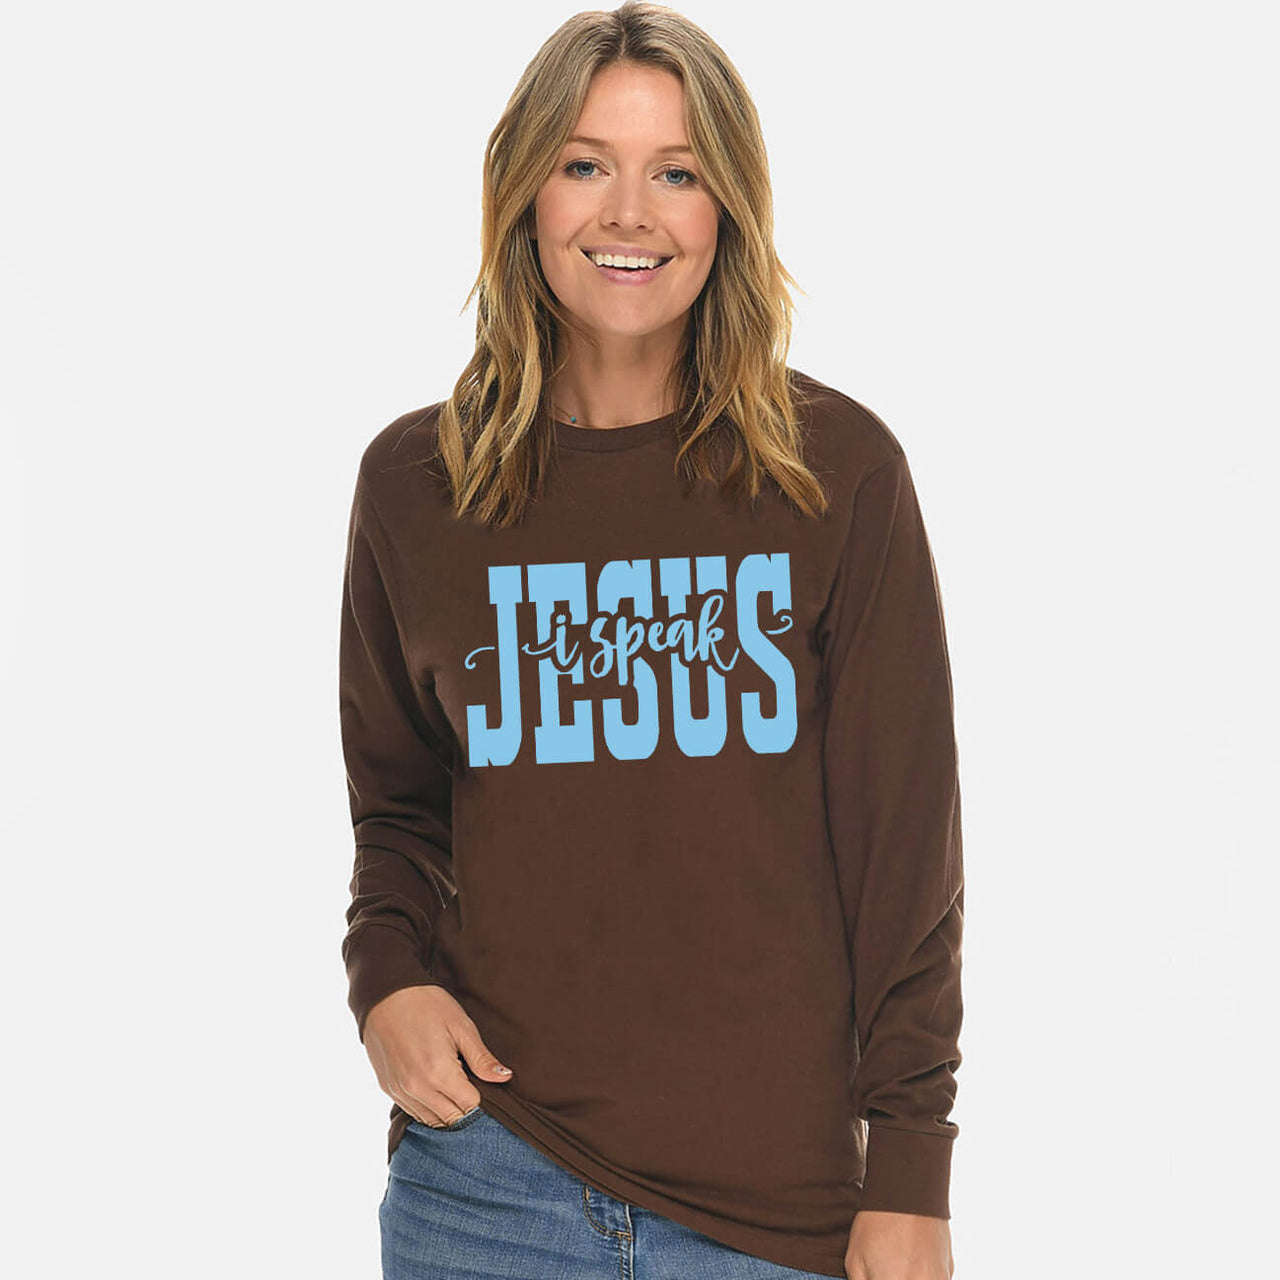 I Speak Jesus Unisex Long Sleeve T Shirt